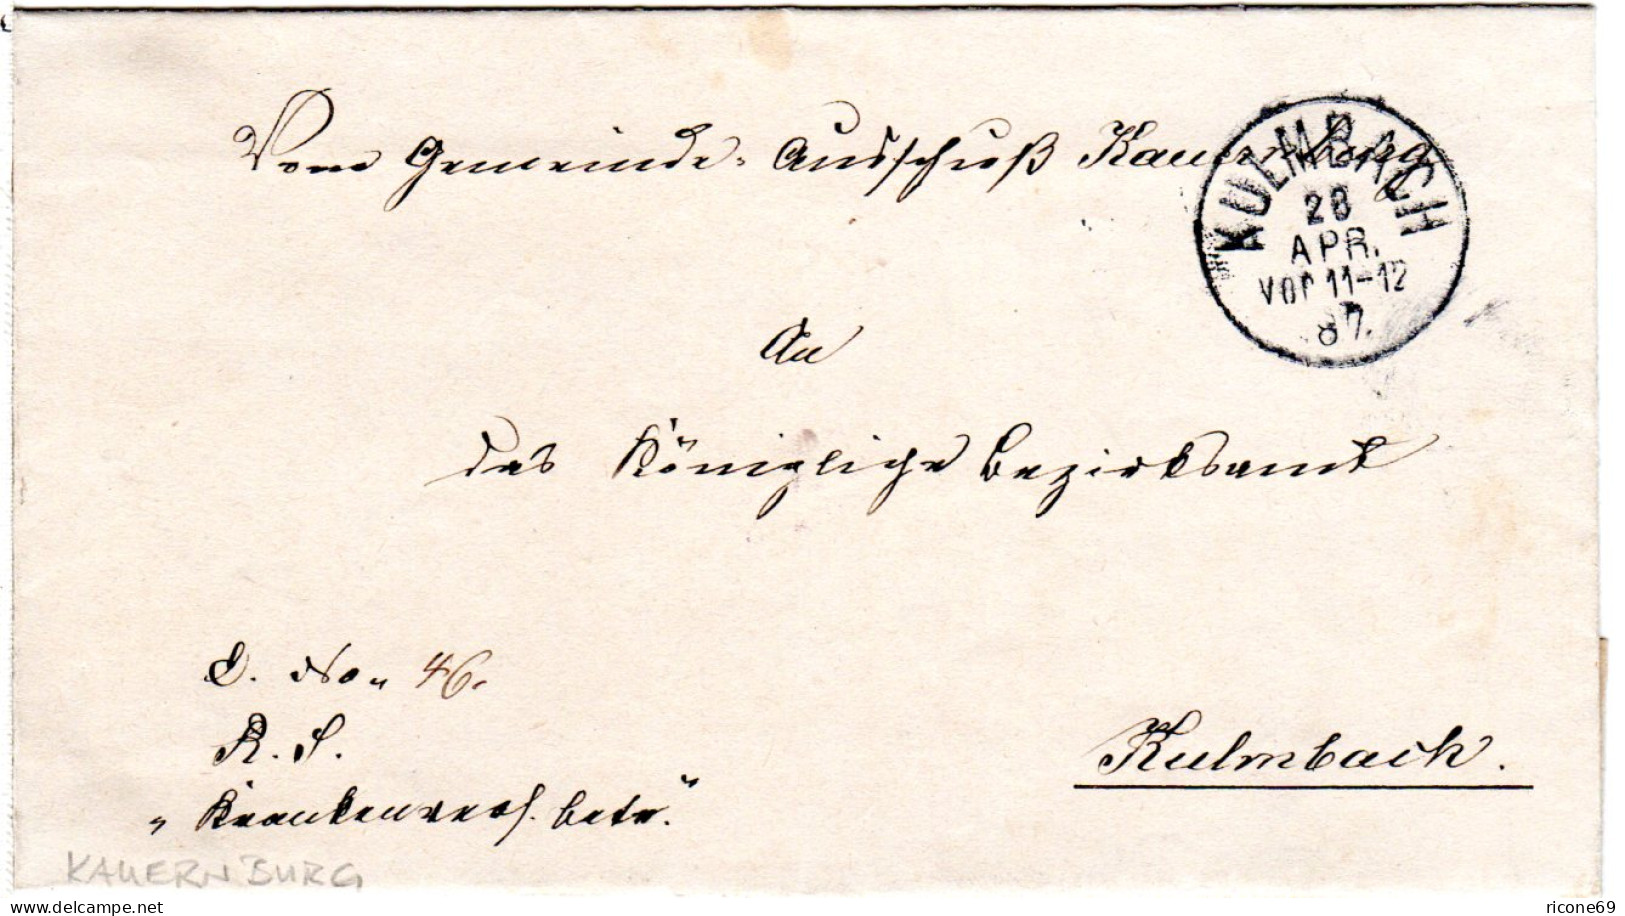 Bayern 1887, K1 KULMBACH Auf Amtsbrief Des Gemeinde Ausschuß Kauernburg. - Lettres & Documents